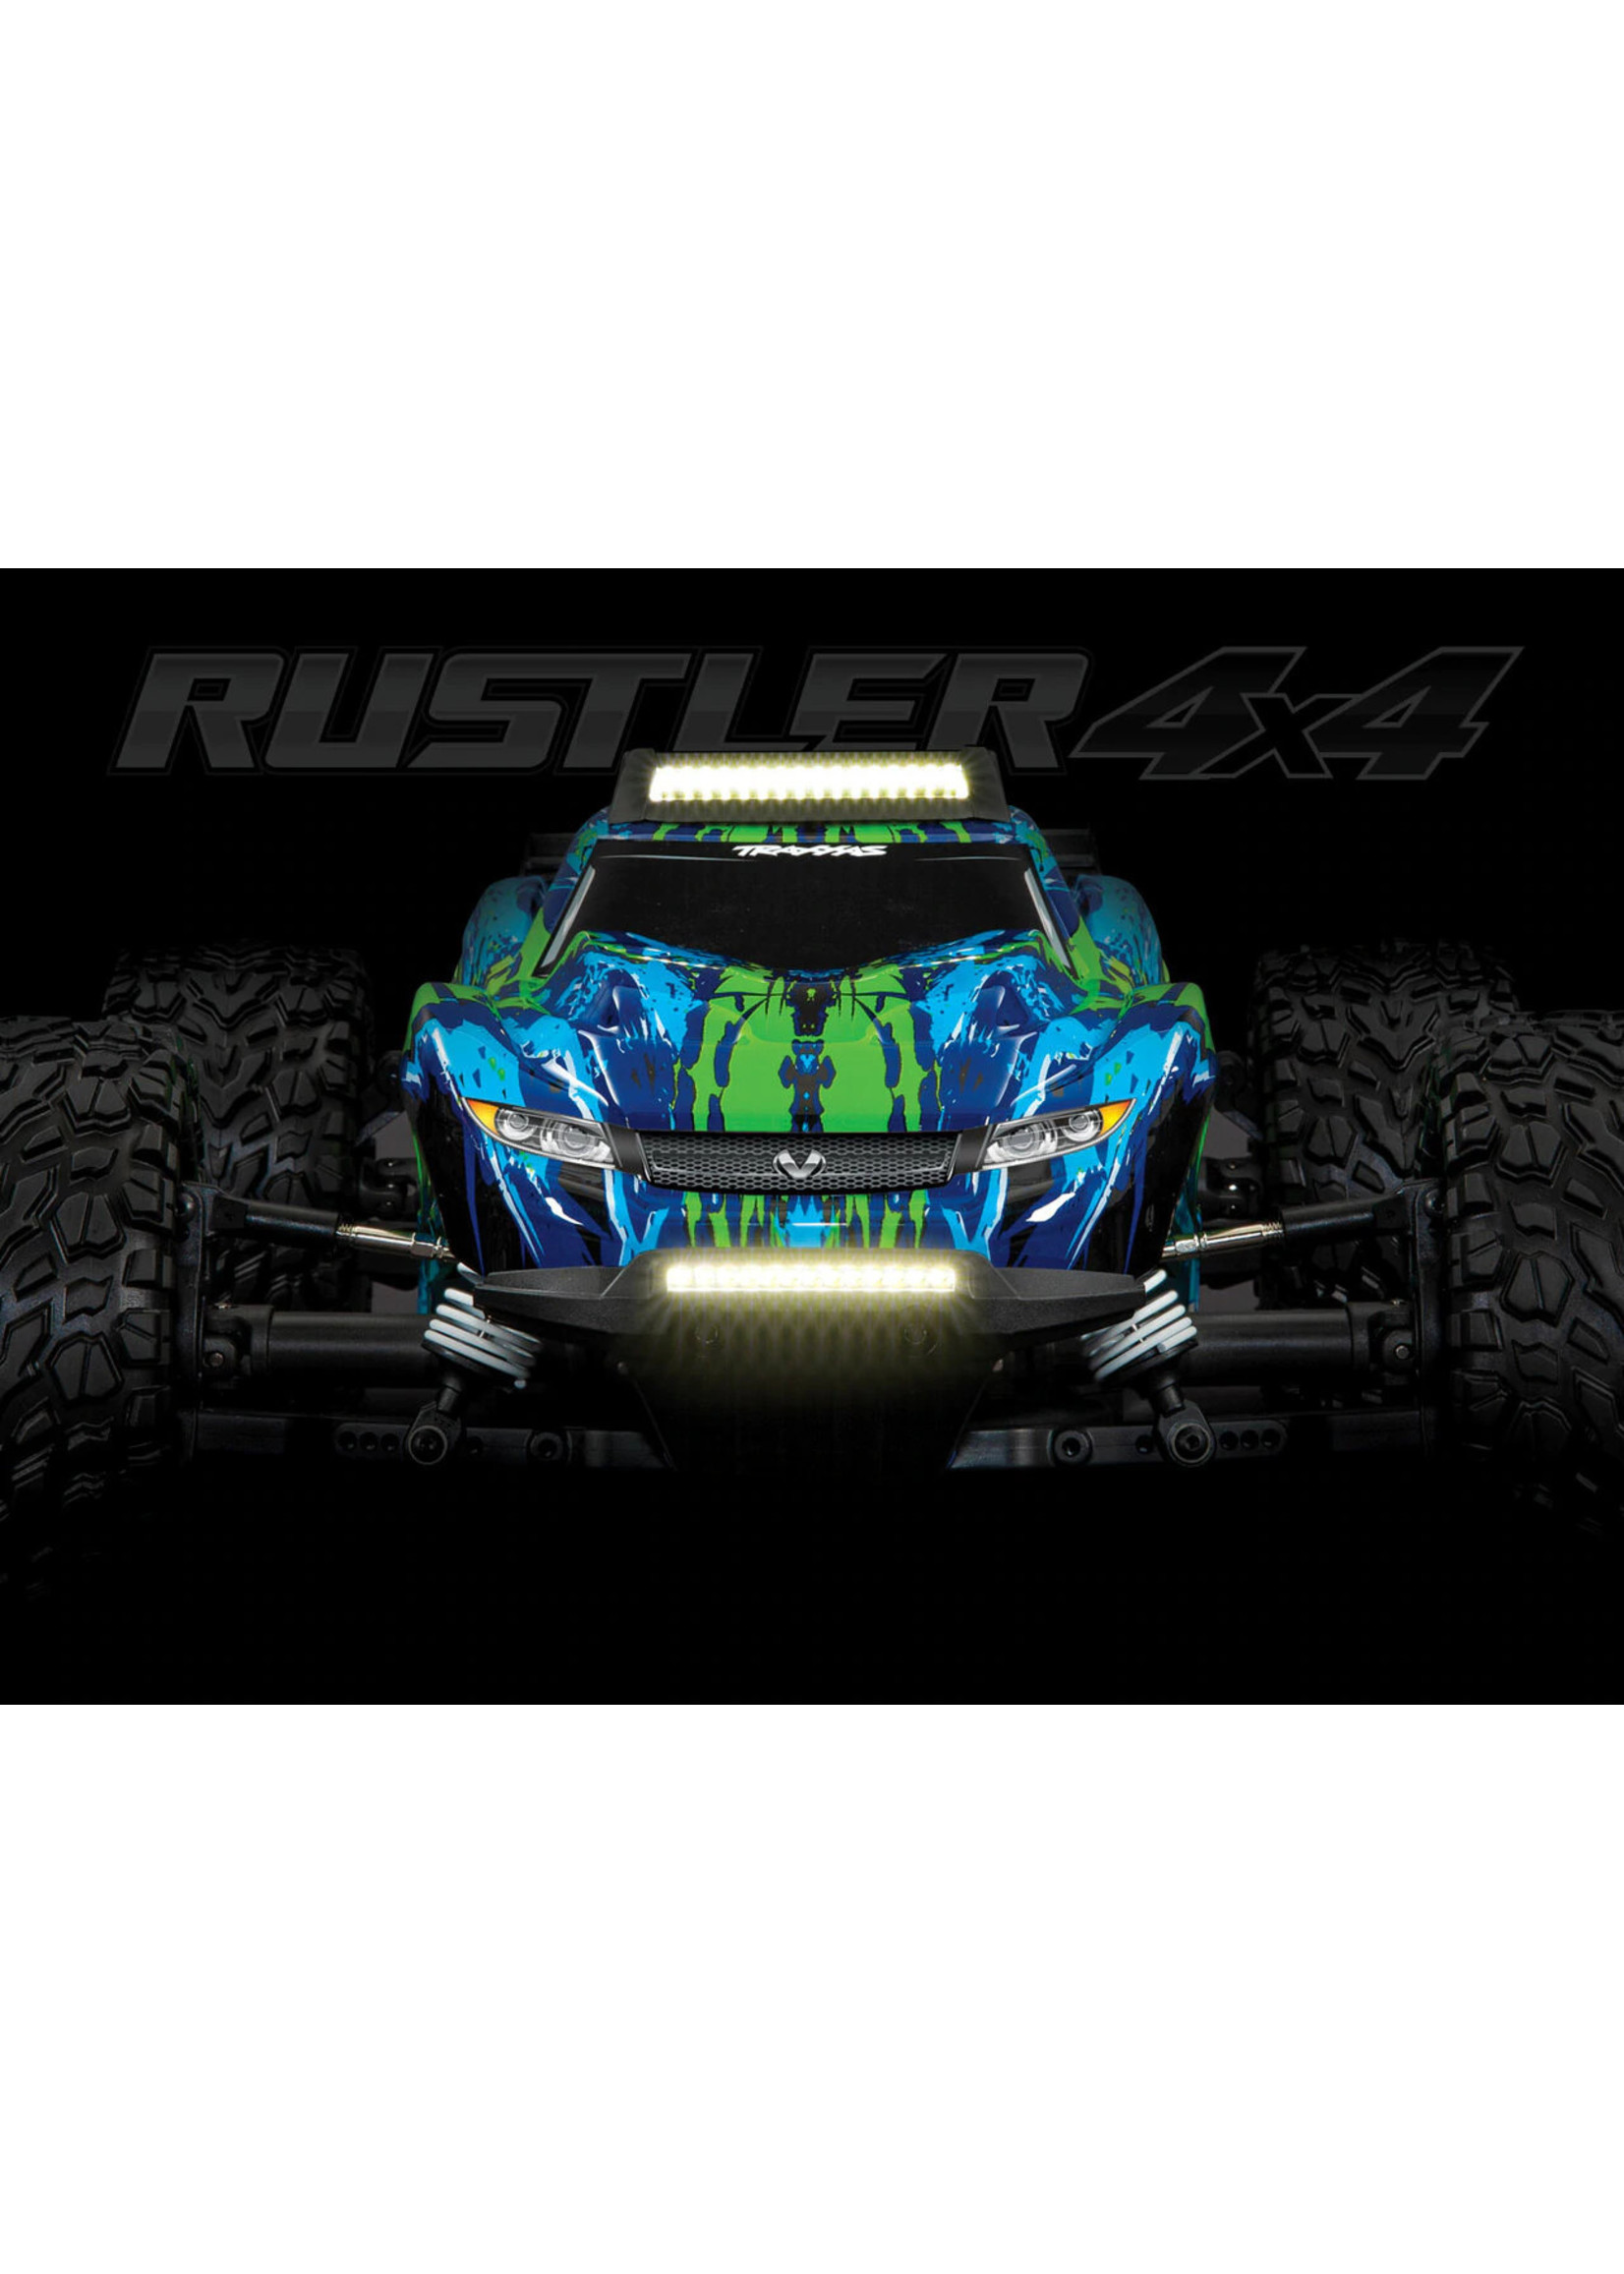 6795 - LED Light Set - Rustler 4x4 - Hub Hobby